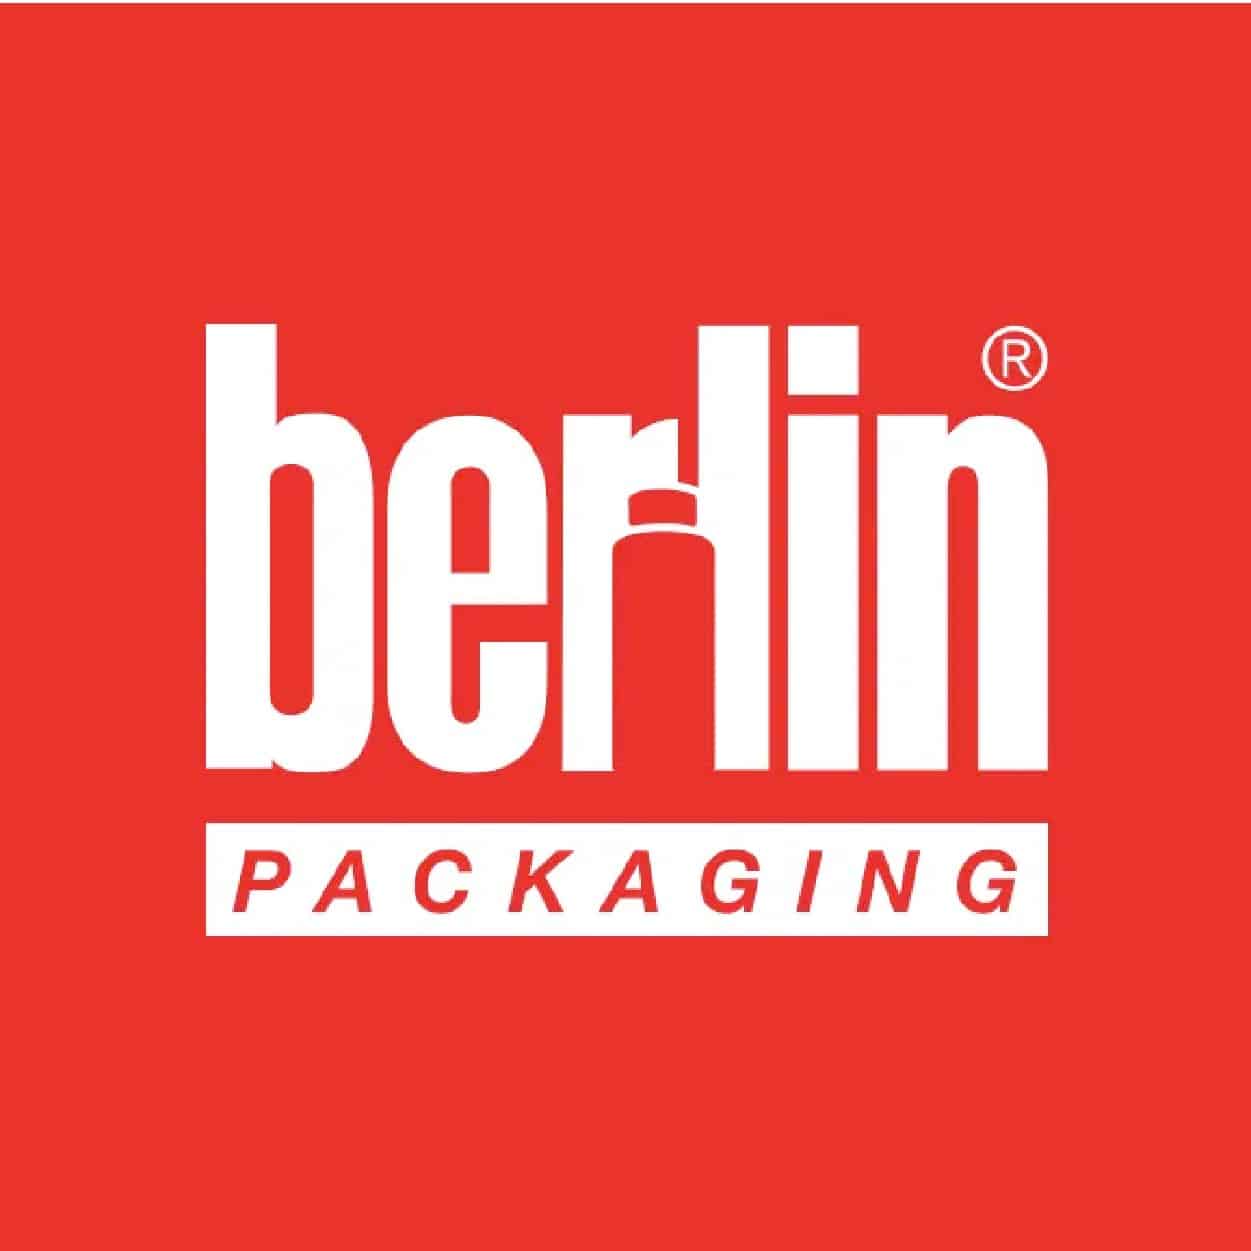 berlin packaging